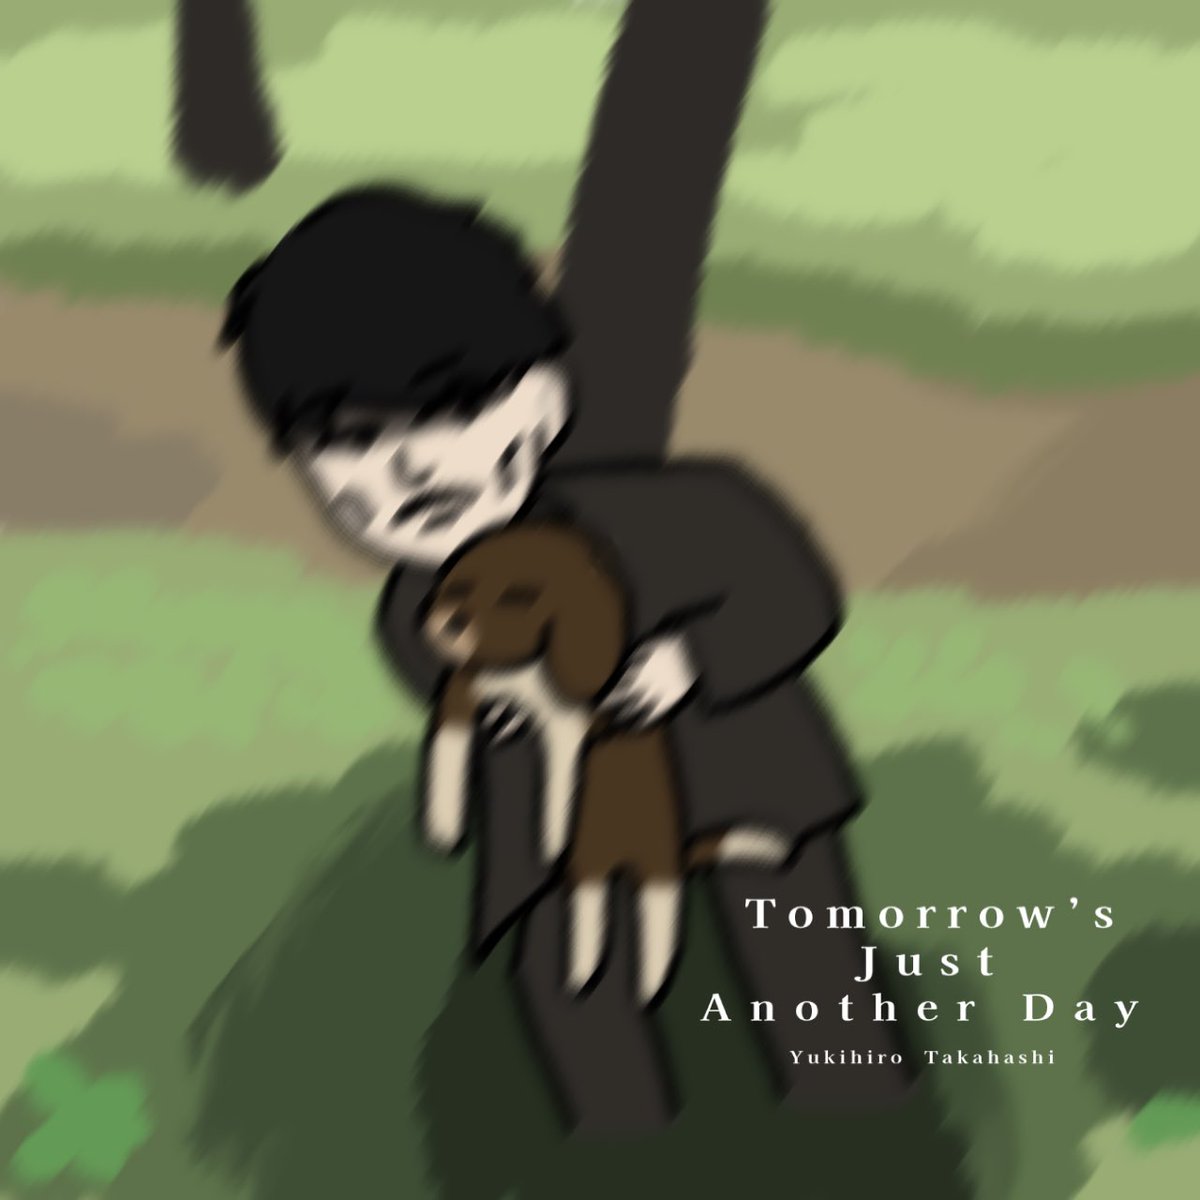 「Tomorrow’s Just Another Day」(1983)
Yukihiro Takahashi

#illustration #YukihiroTakahashi